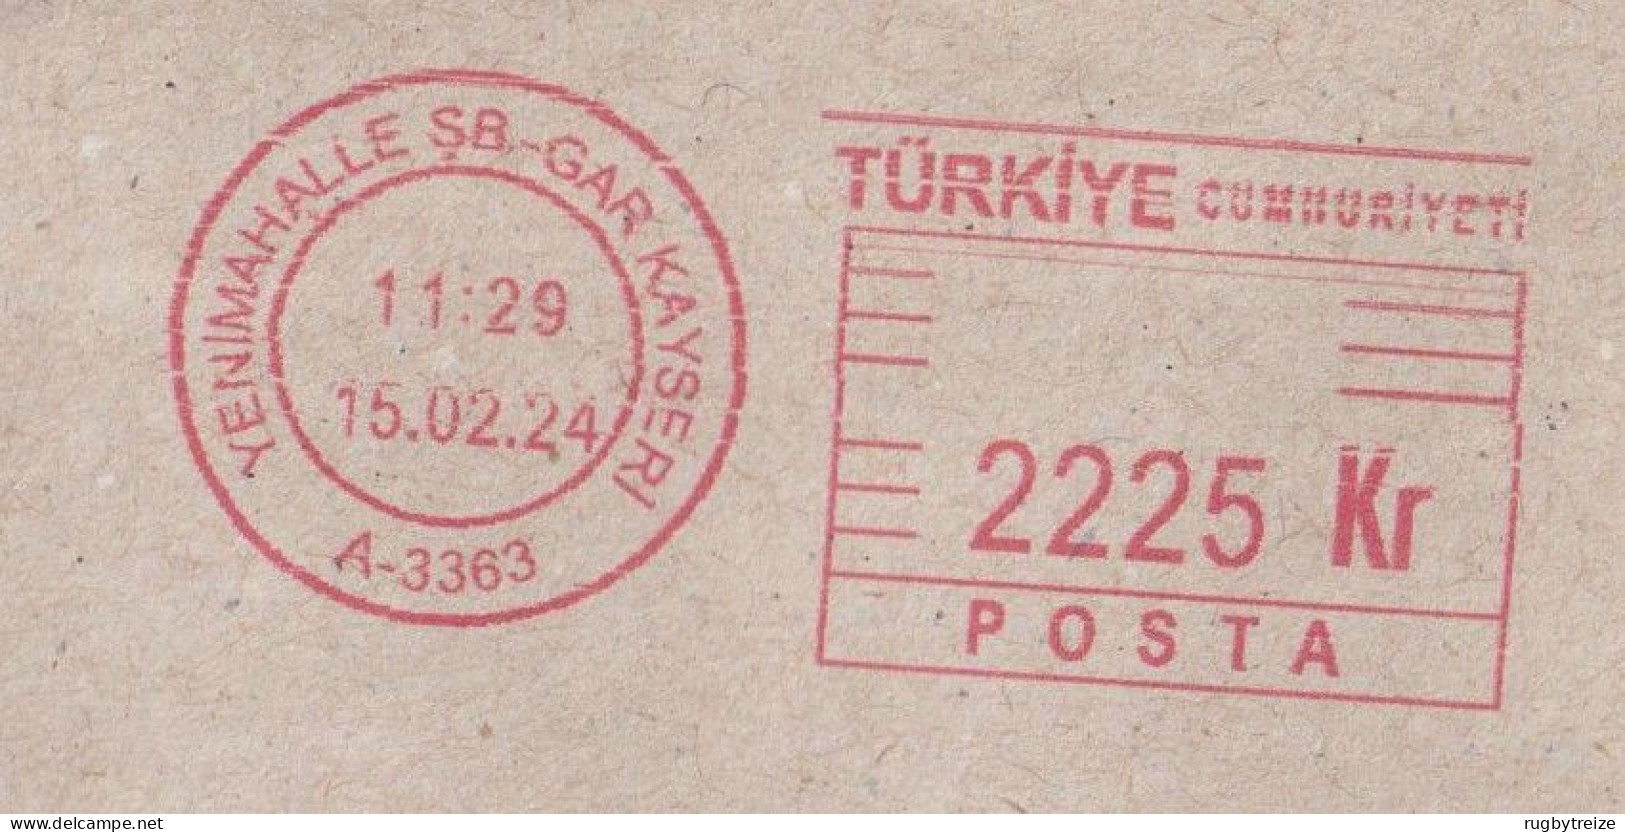 7623 Lettre Cover Recommandé Registered 2024 TURQUIE TURKIYE Affranchissement Mécanique Machine à Affranchir - Covers & Documents